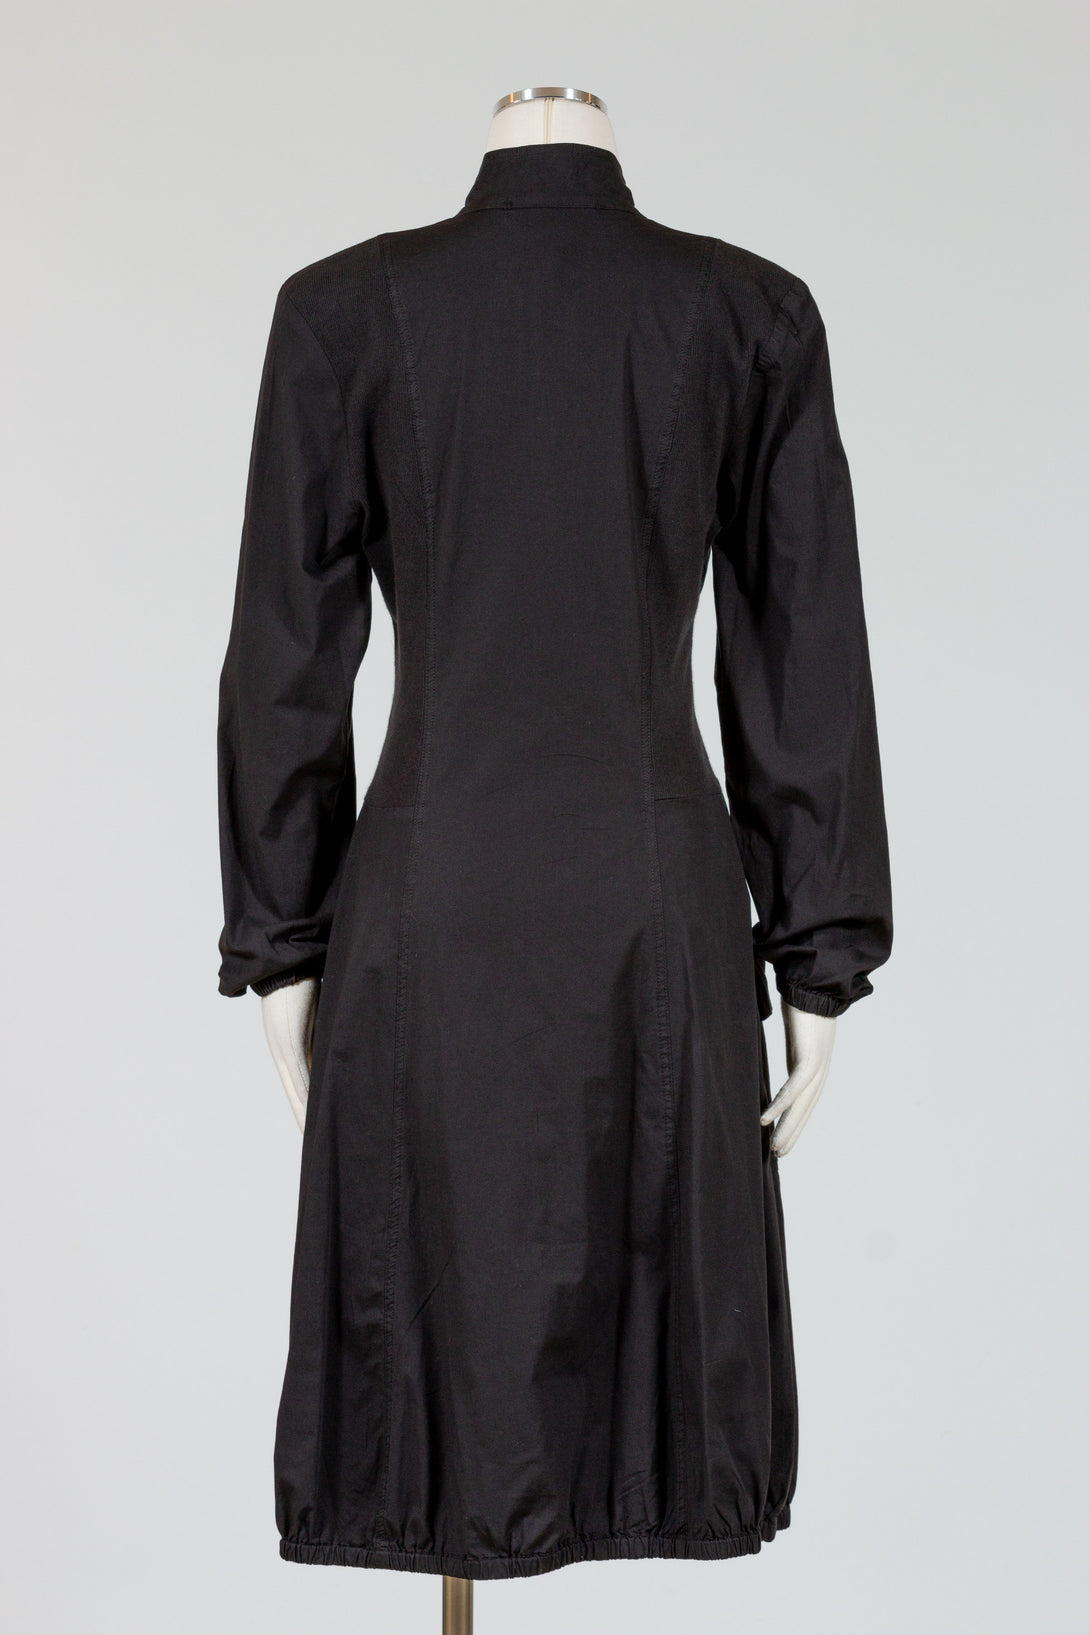 XCVI-Deschutes-Jacket-Dress-Black